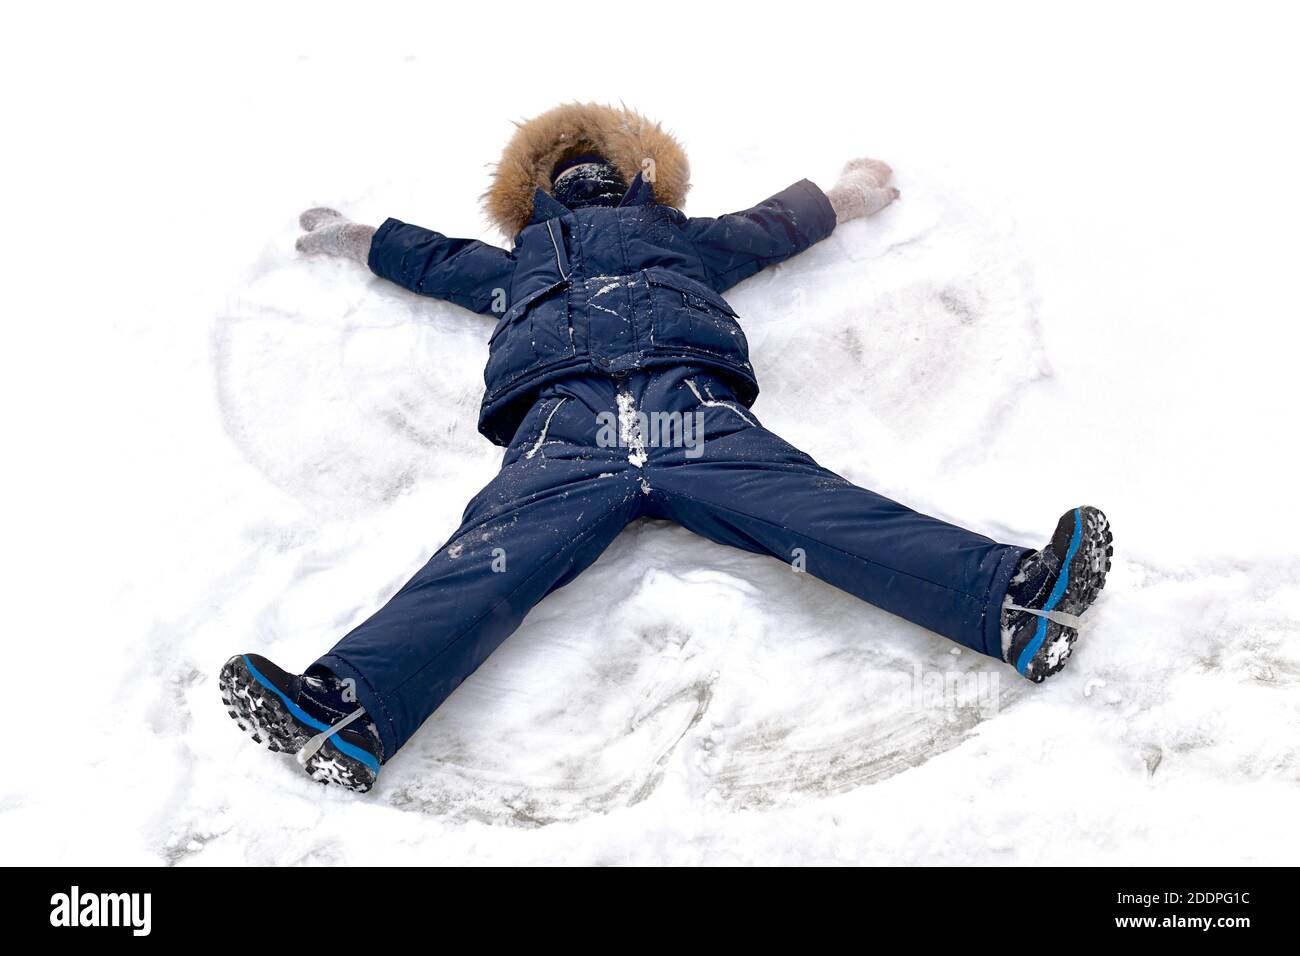 Winterspaß im Schnee. Ein Kind in einem warmen blauen Schneeanzug mit Fell auf der Kapuze und Balaclava Gamaschen auf seinem Gesicht, liegt in Bewegung und hinterlässt eine Spur von einem A Stockfoto